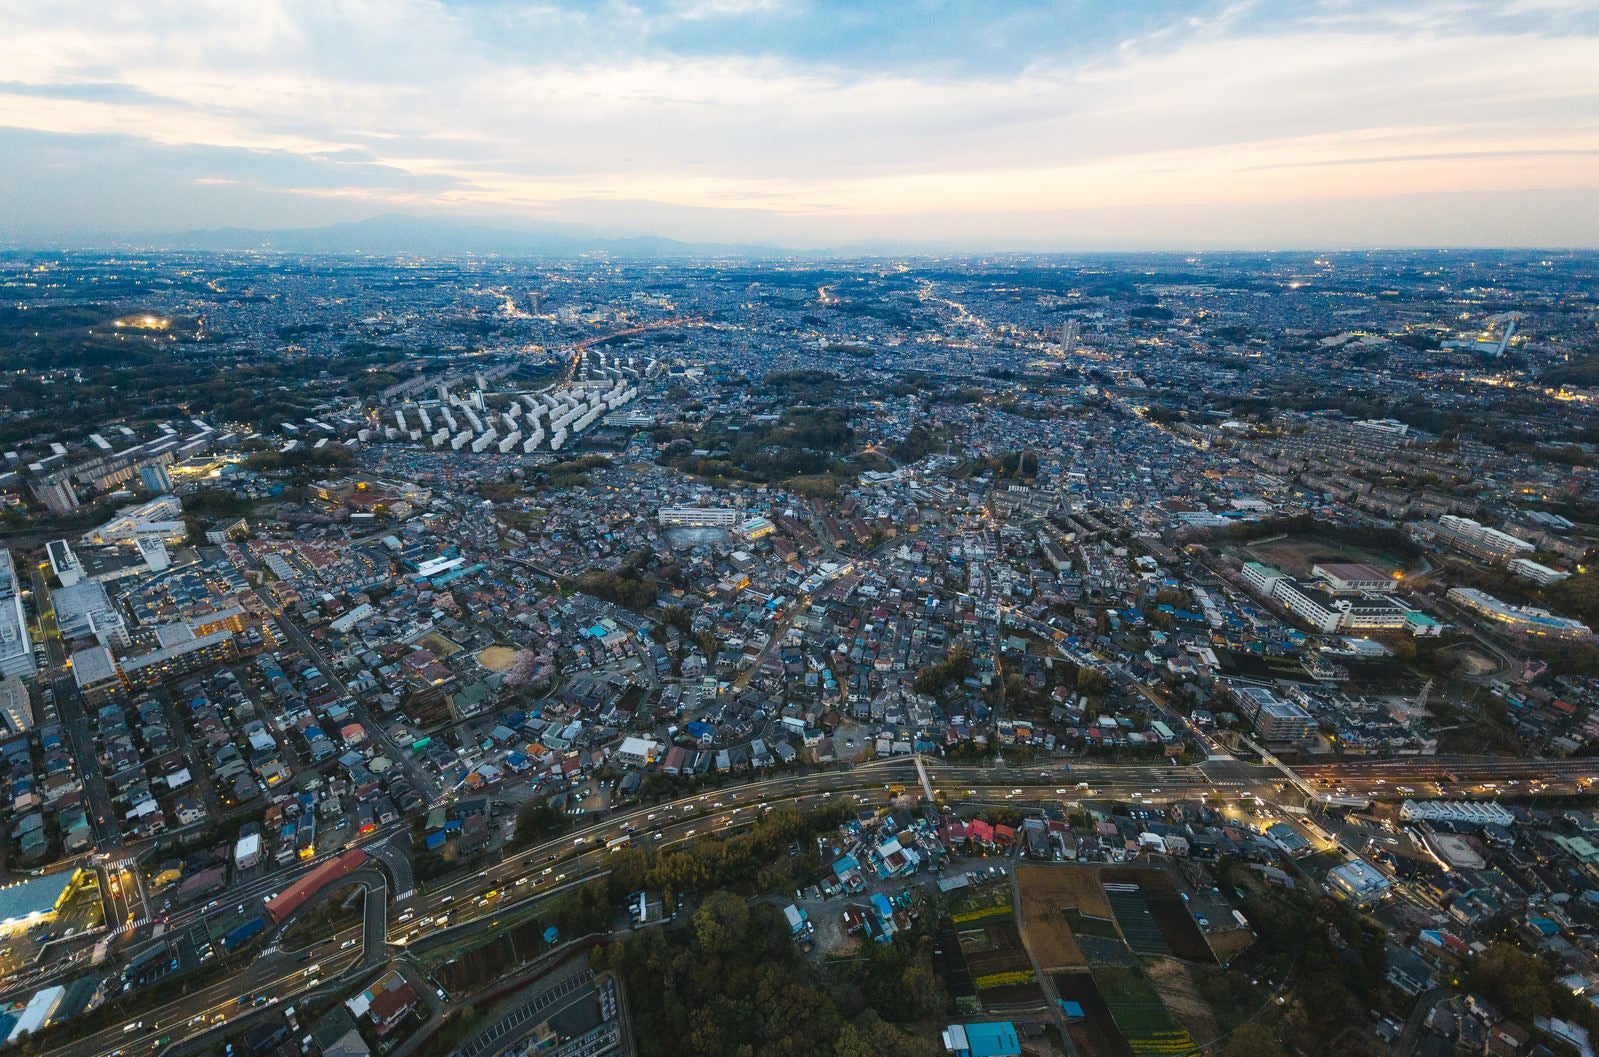 「ヘリコプター上空から撮影した市街地」の写真